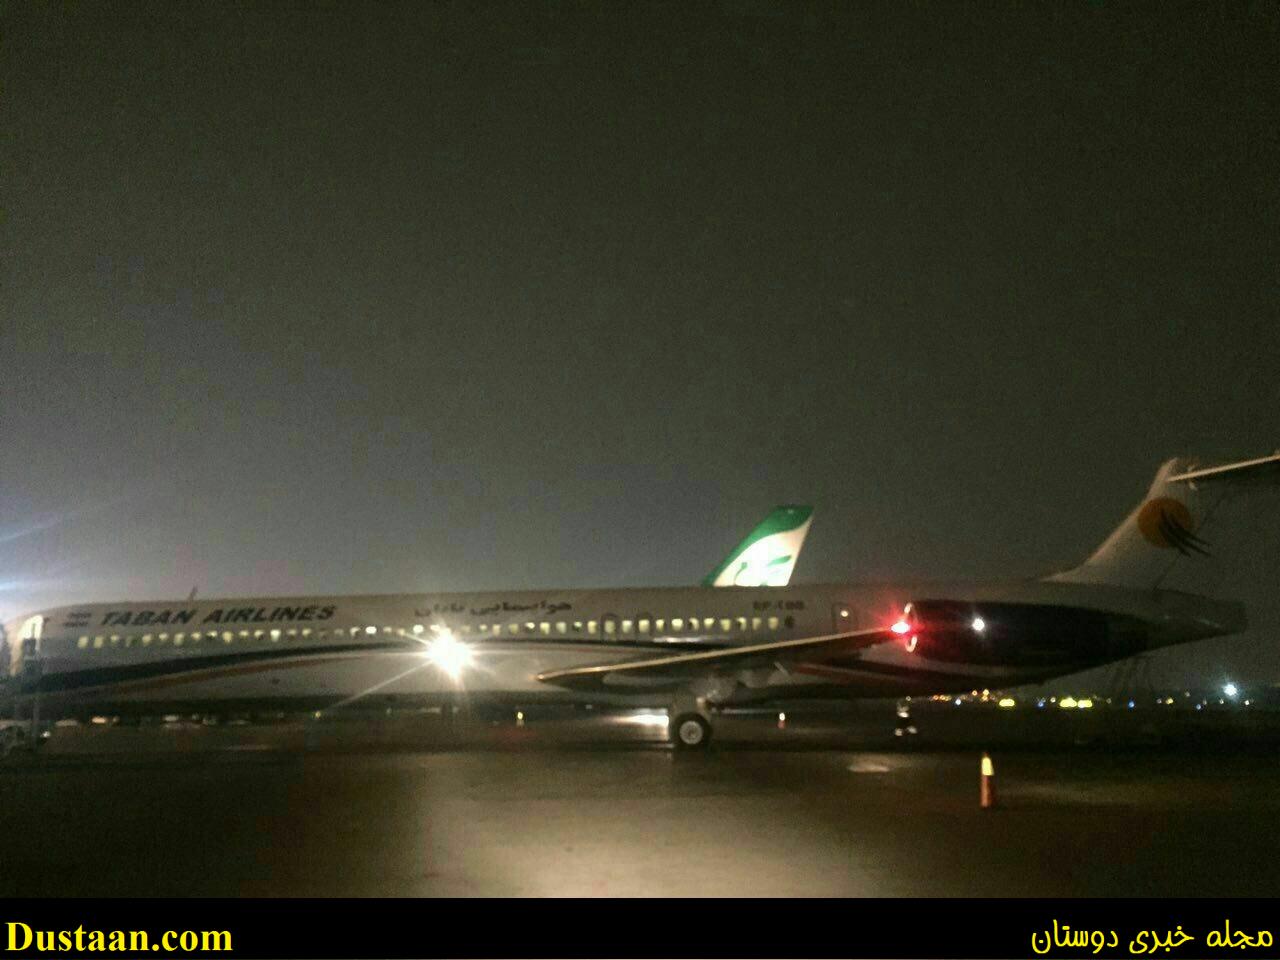 www.dustaan.com-تصویری از هواپیمای سانحه دیده در فرودگاه مهرآباد